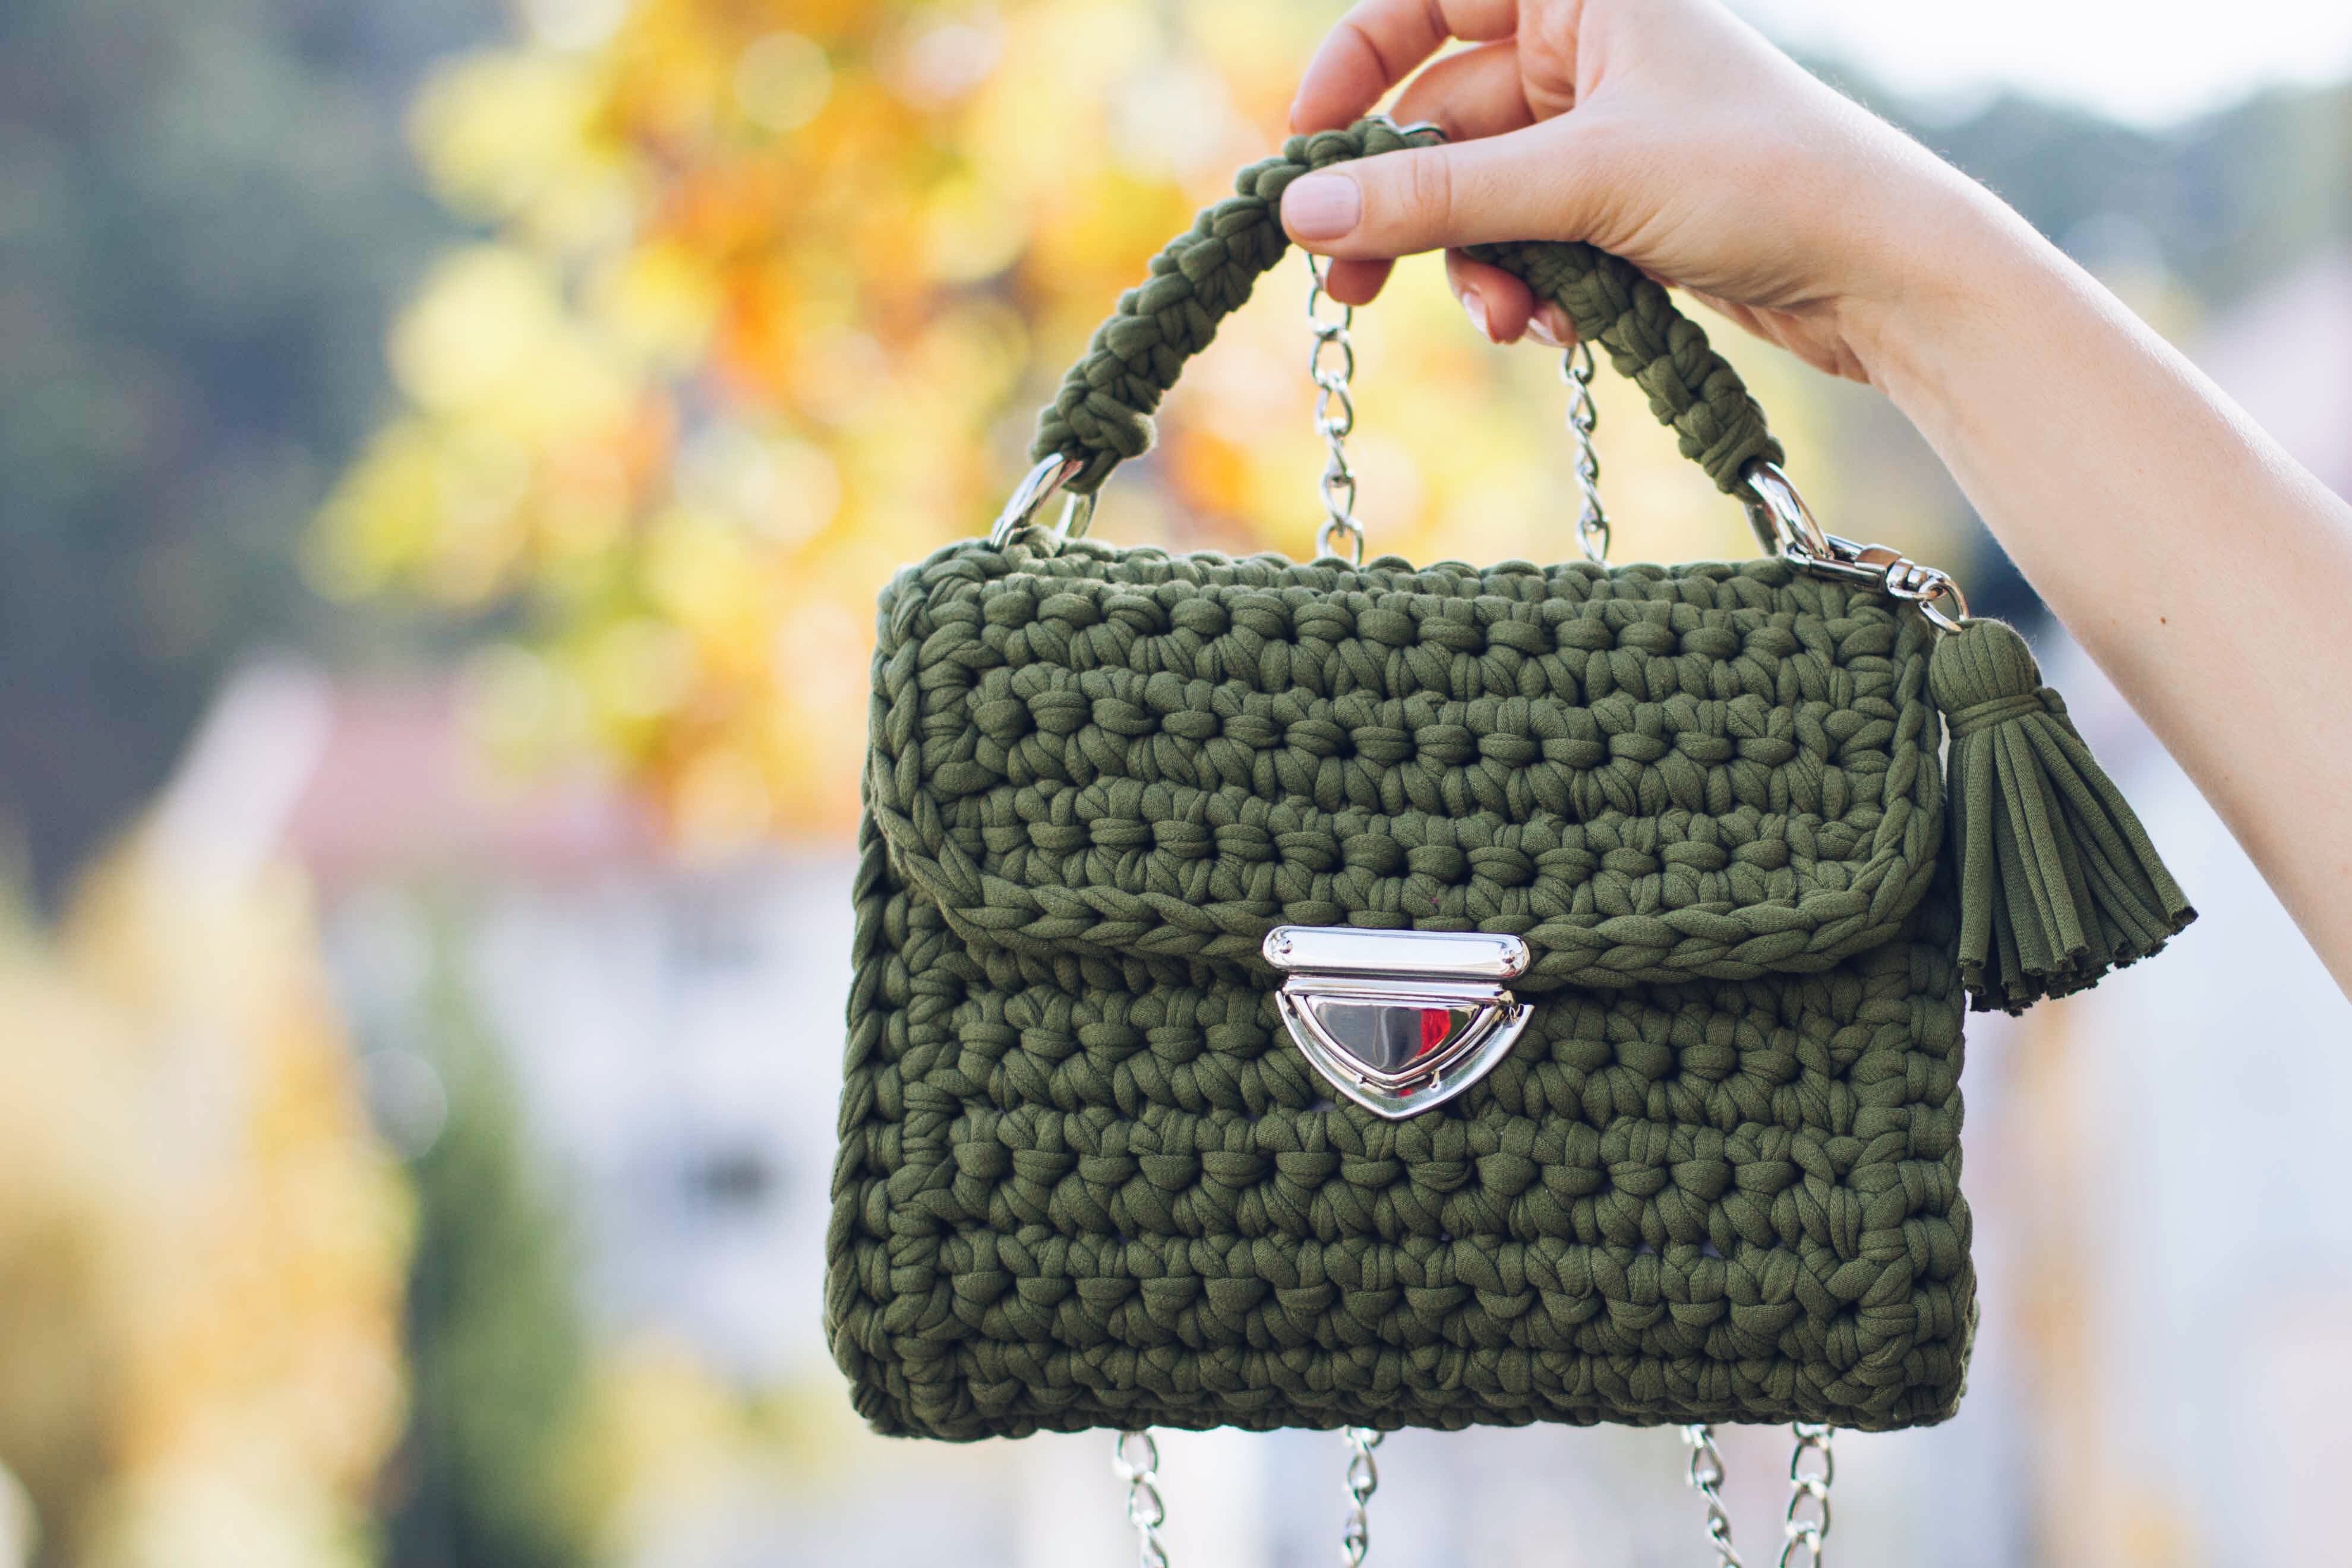 Little Treasures: Crochet Boho Bags